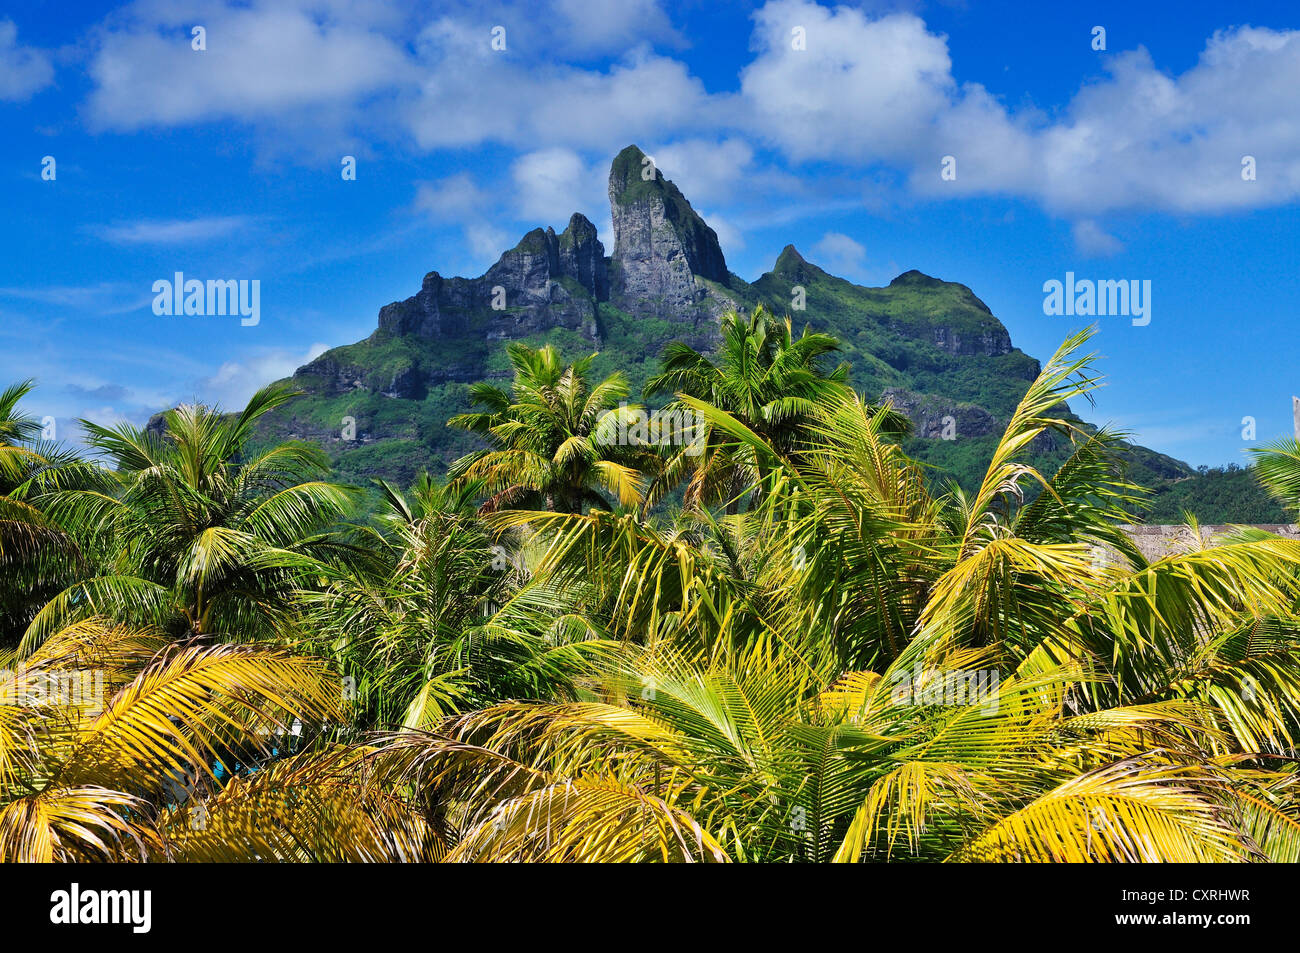 Le Mont Otemanu, St Regis Bora Bora Resort, Bora Bora, Iles sous le Vent, îles de la société, Polynésie française, l'Océan Pacifique Banque D'Images